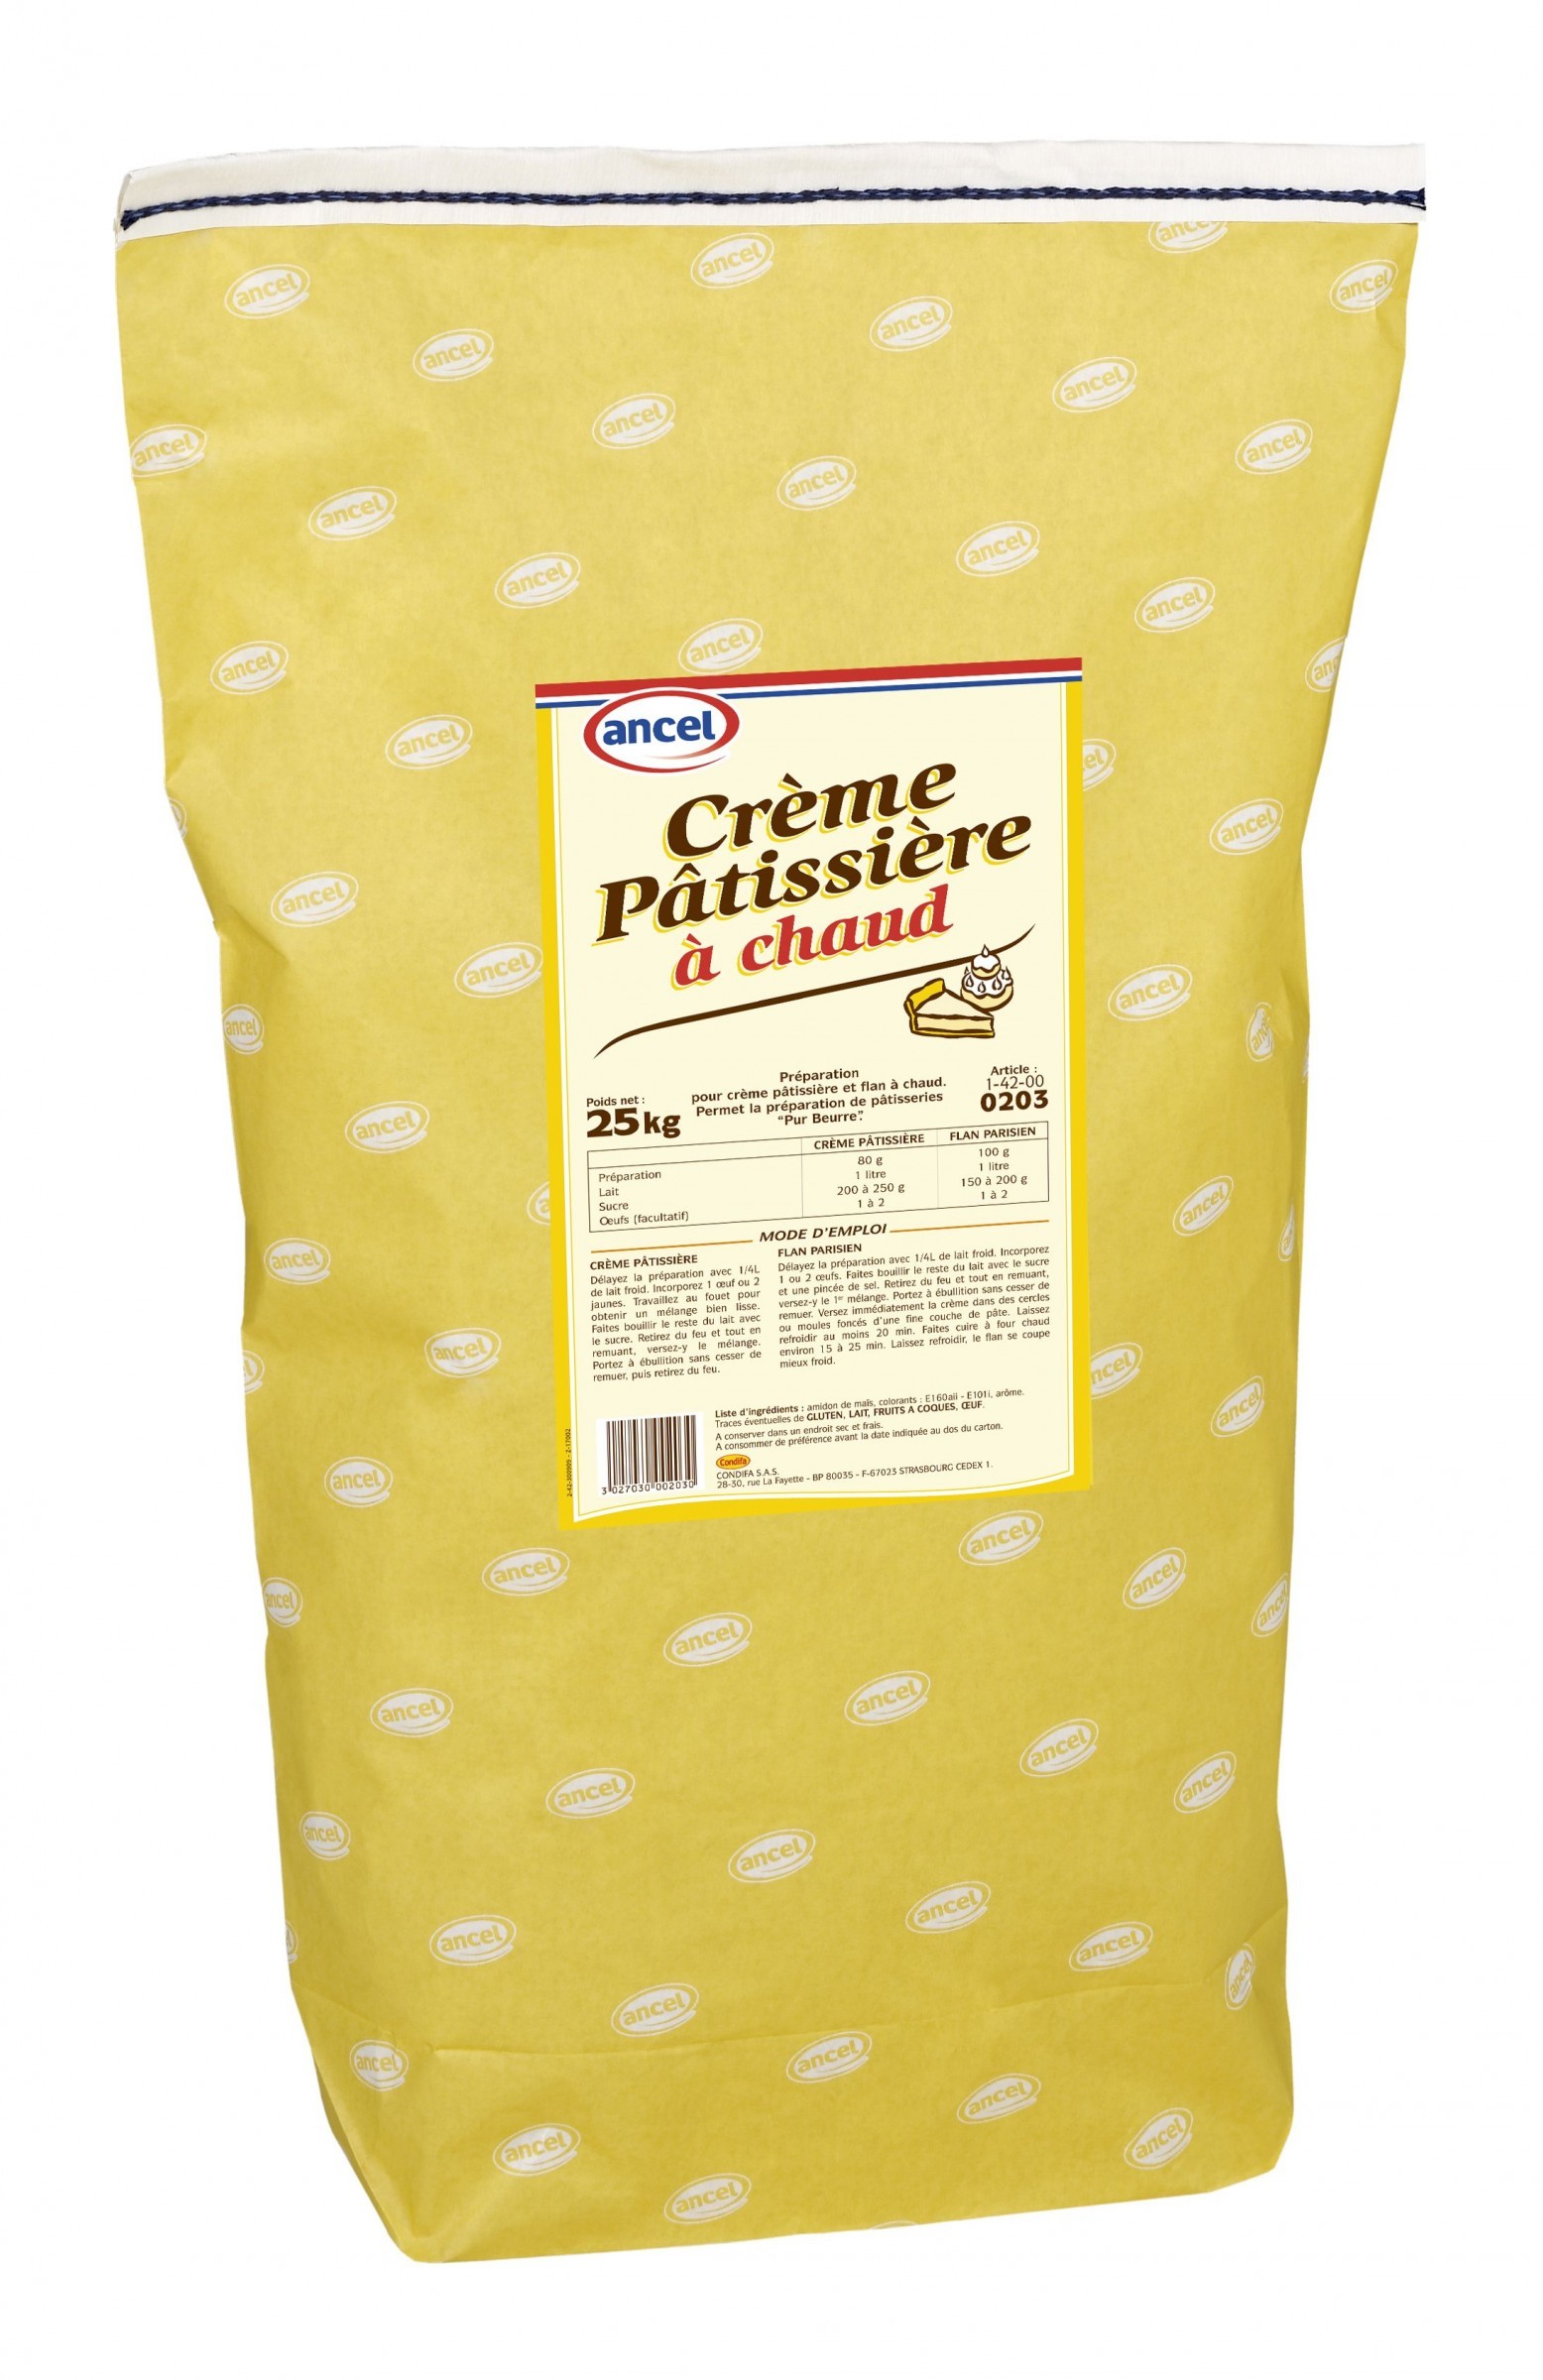 Crème Pâtissière & Poudre à Flan Professionnel: Preparation patisserie